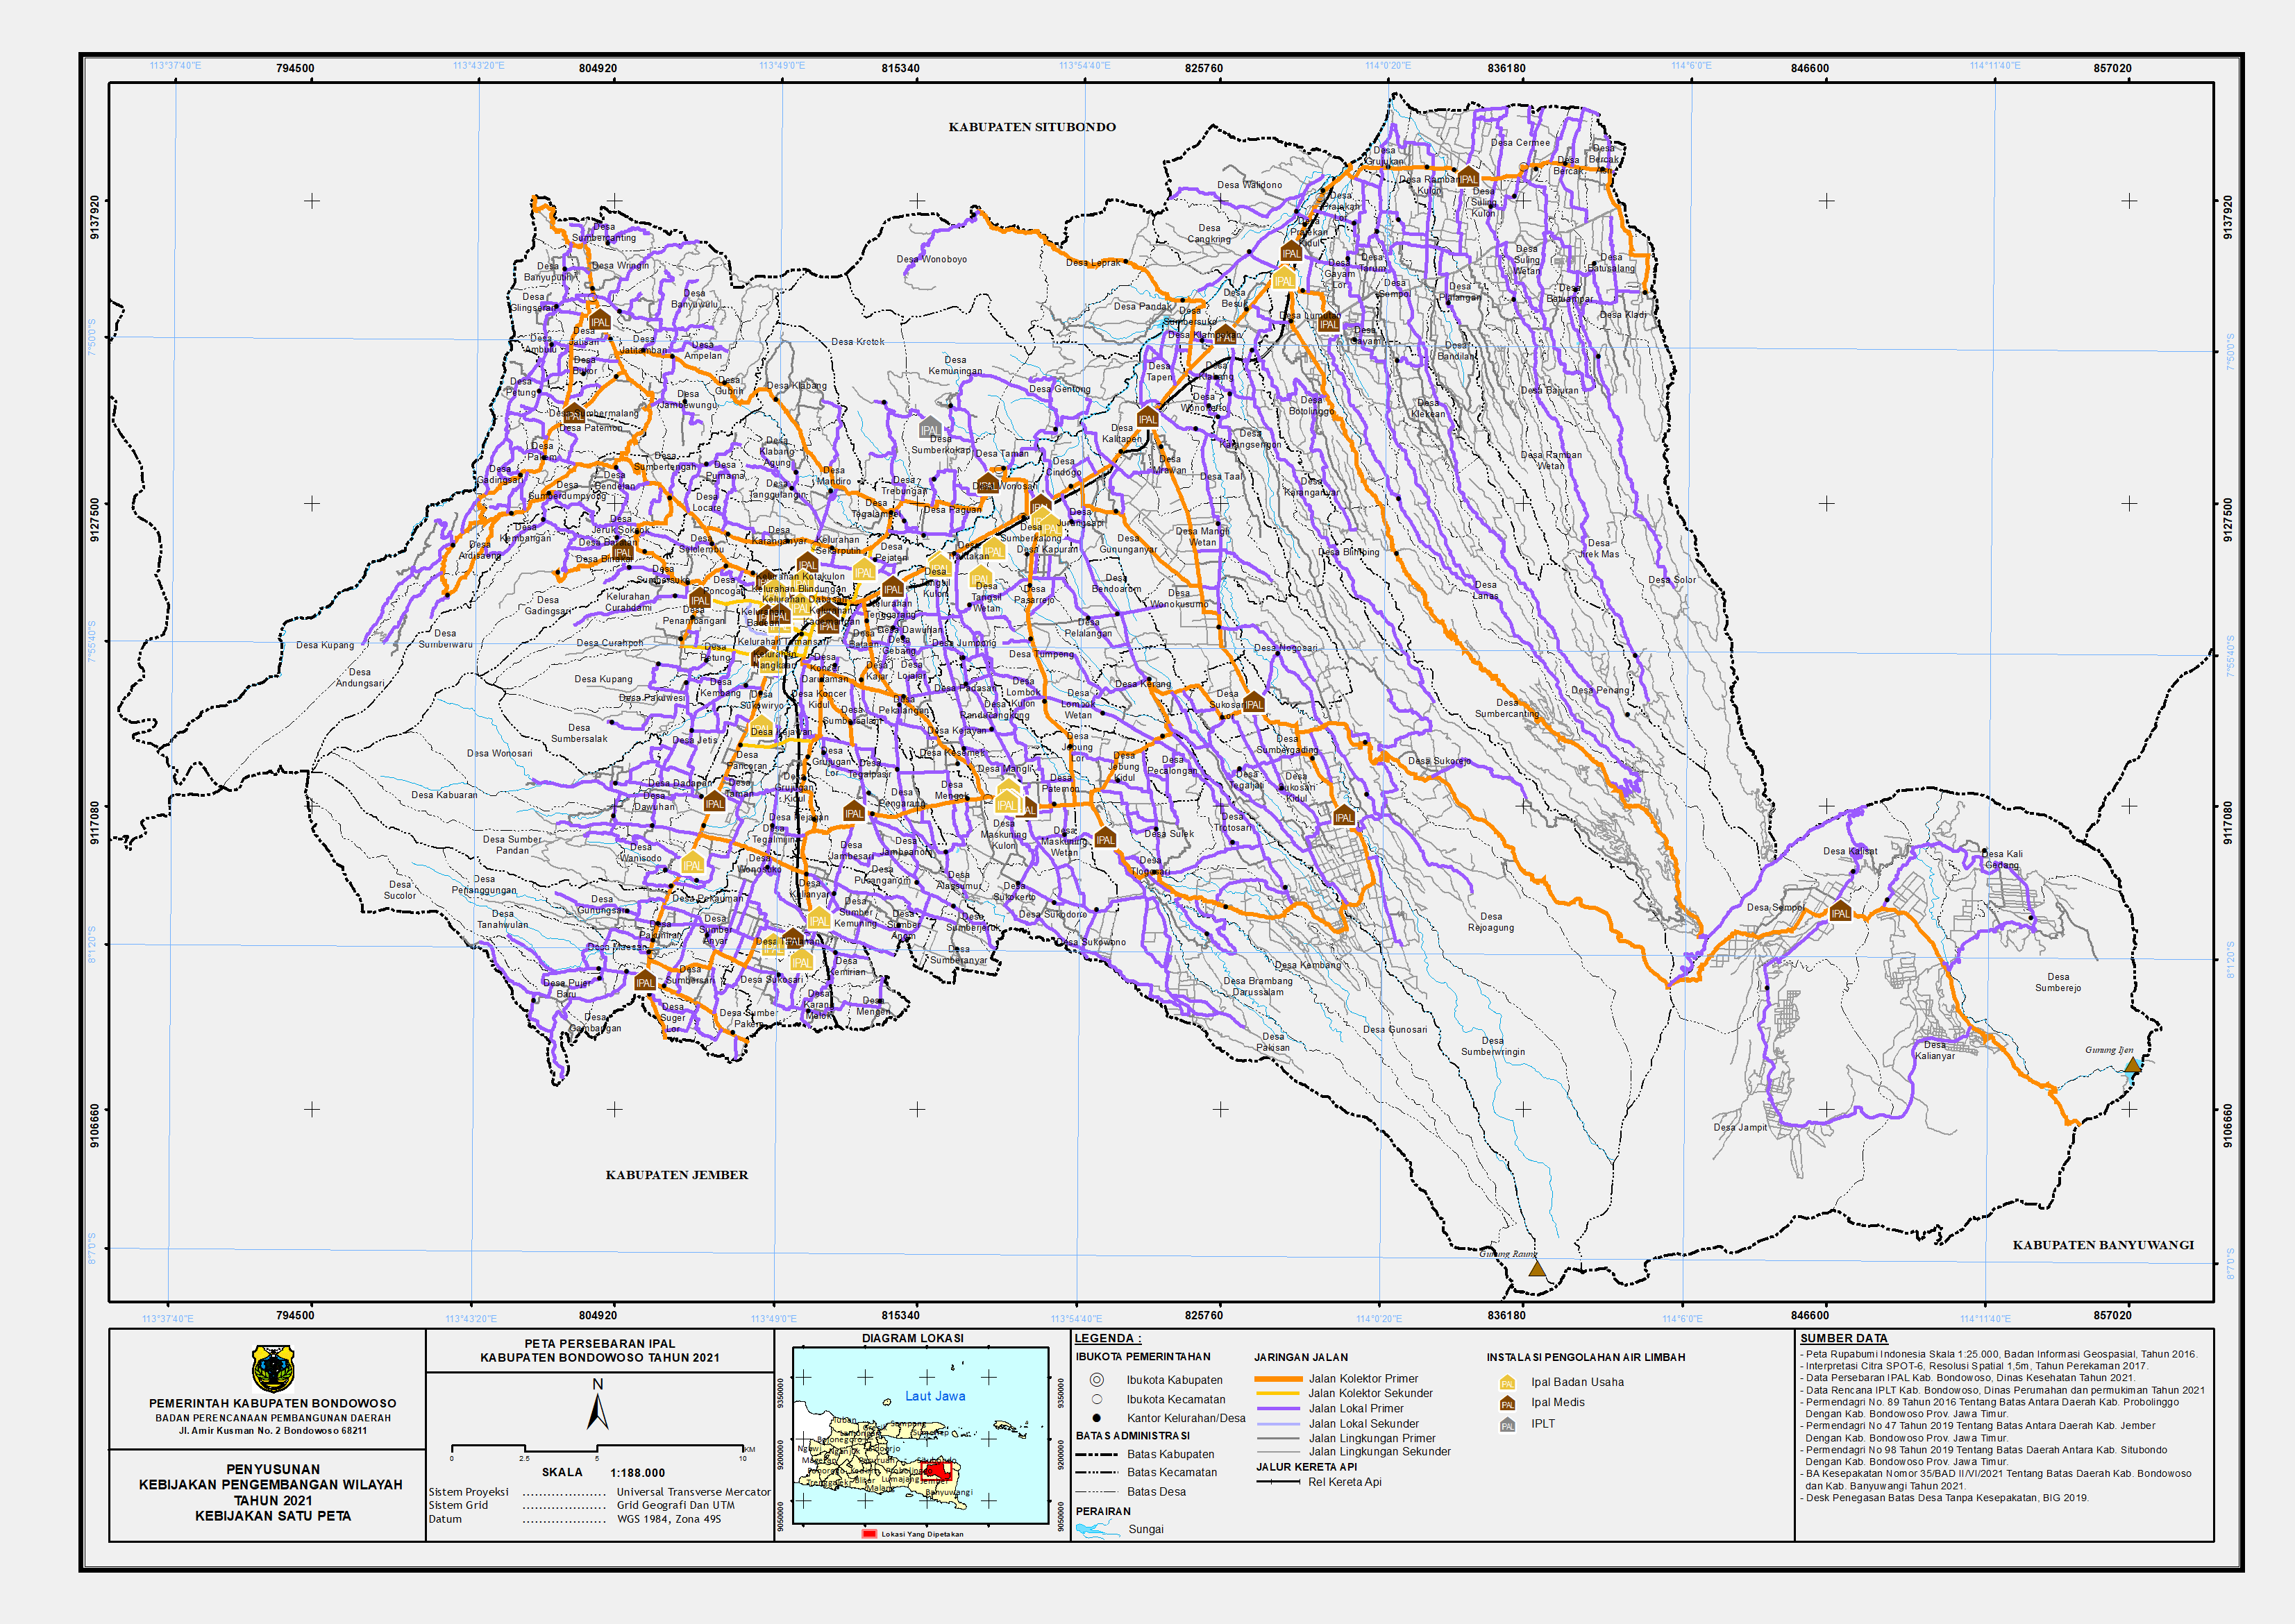 Peta Persebaran IPAL dan IPLT.png